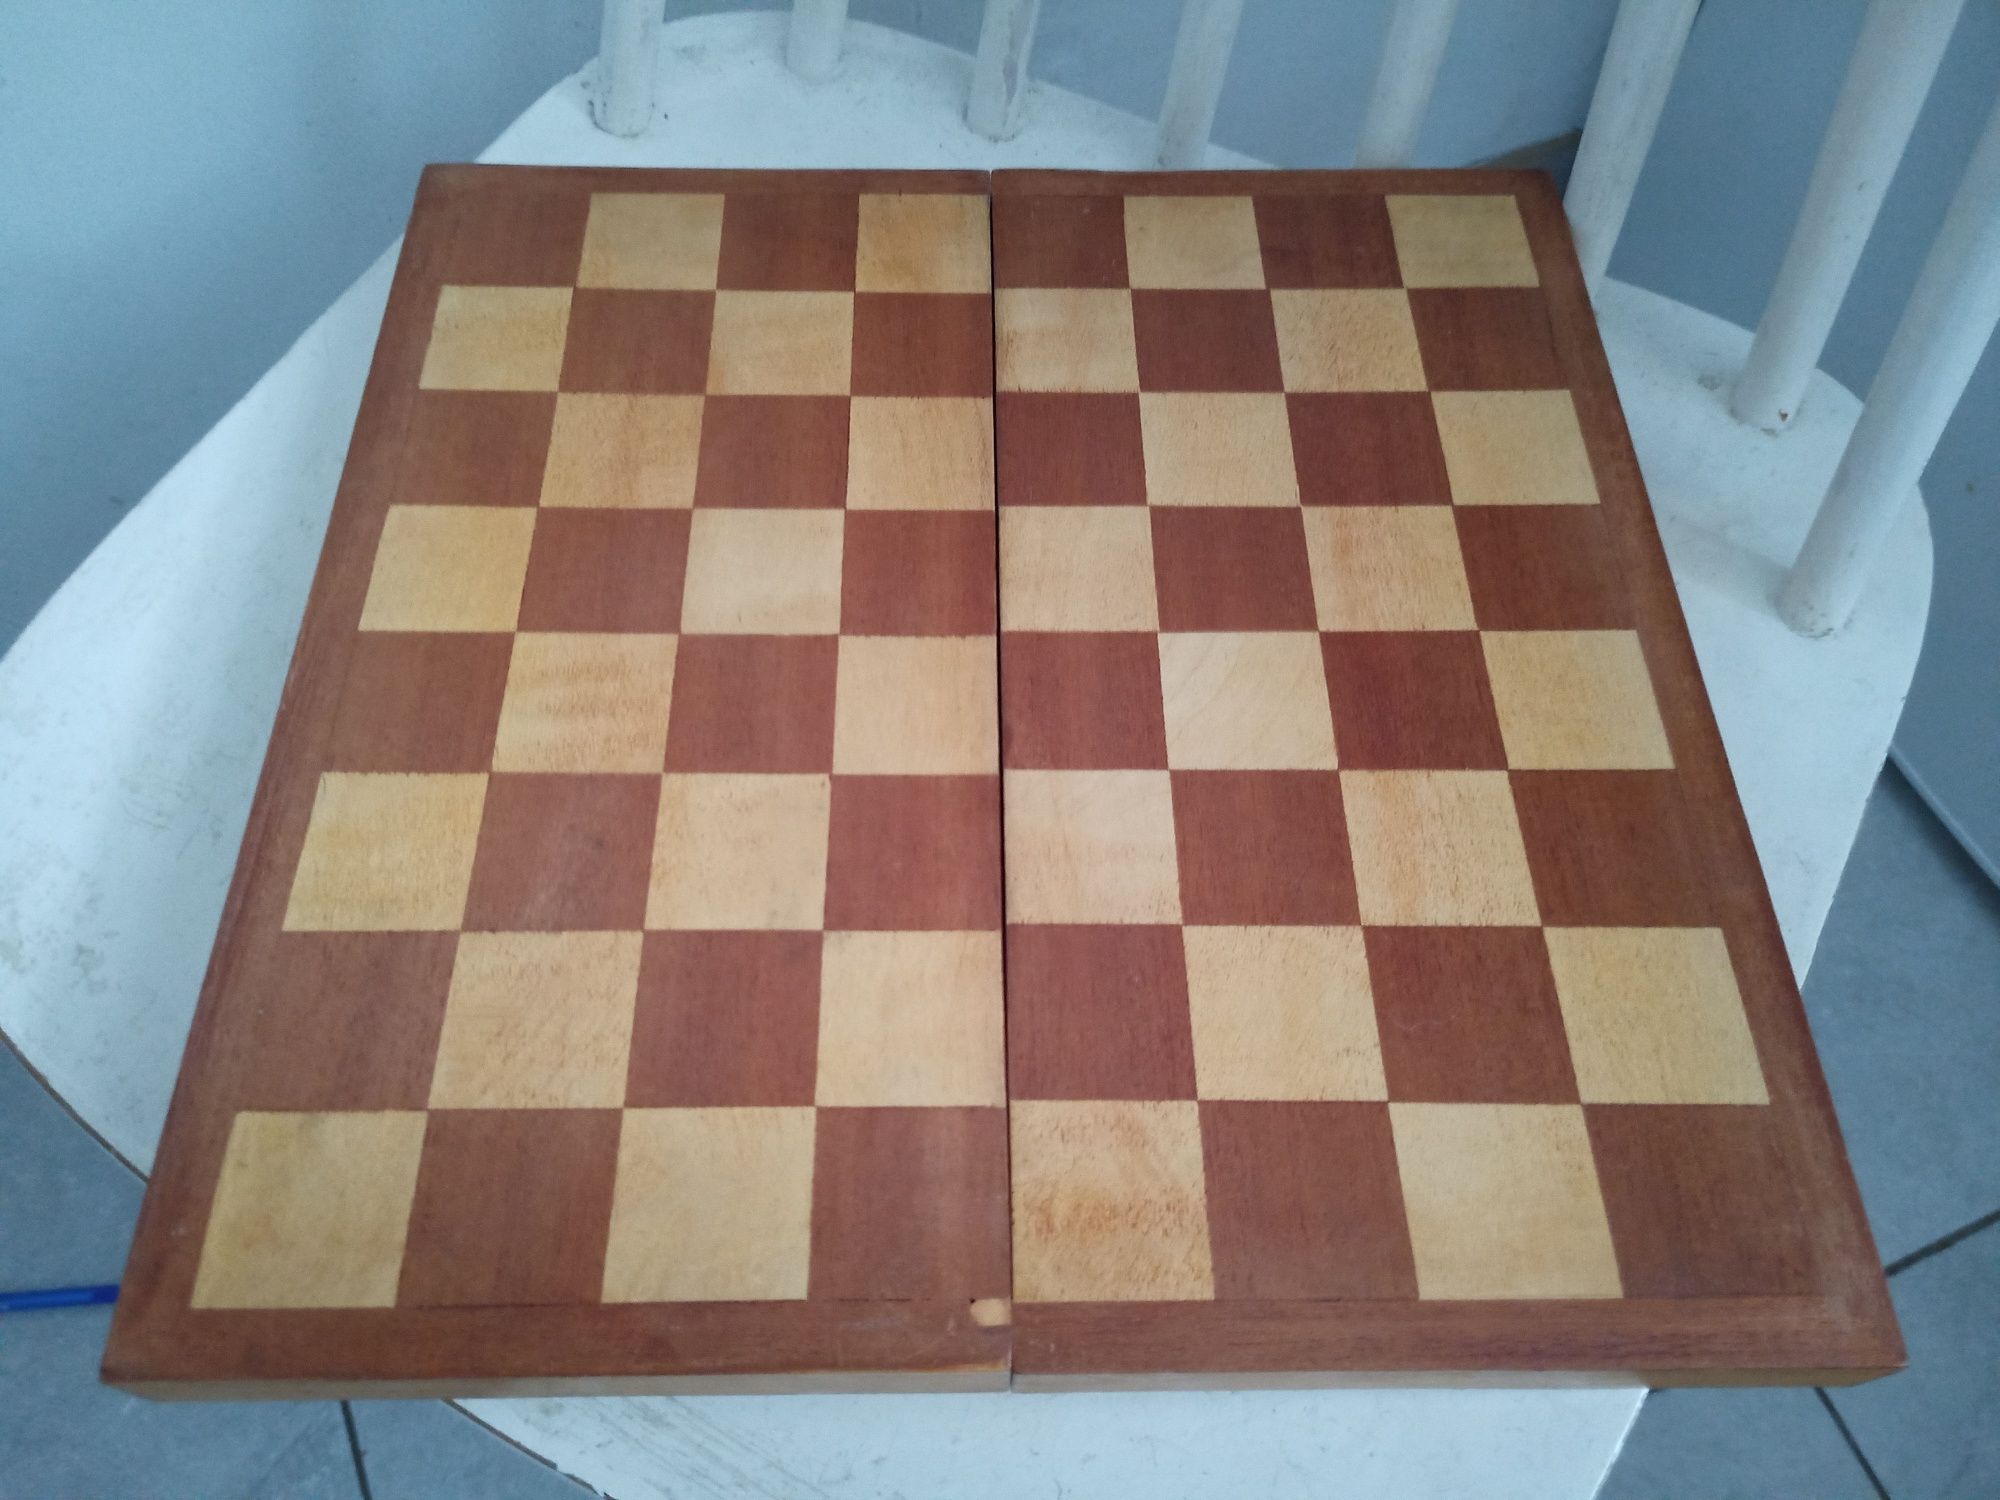 Stare szachy drewniane